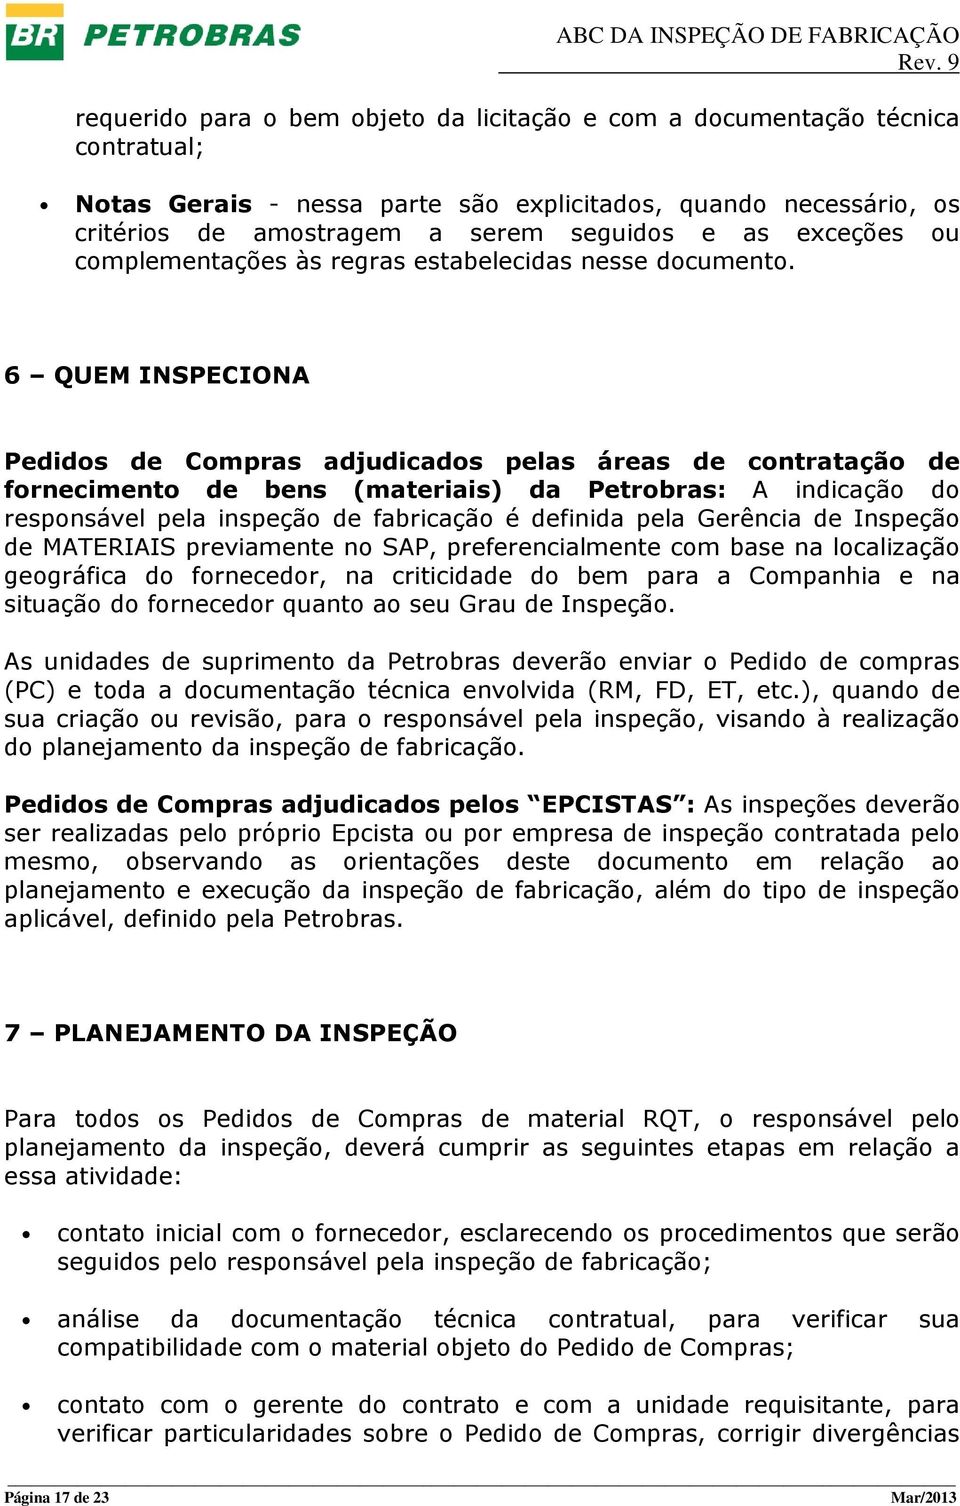 6 QUEM INSPECIONA Pedidos de Compras adjudicados pelas áreas de contratação de fornecimento de bens (materiais) da Petrobras: A indicação do responsável pela inspeção de fabricação é definida pela